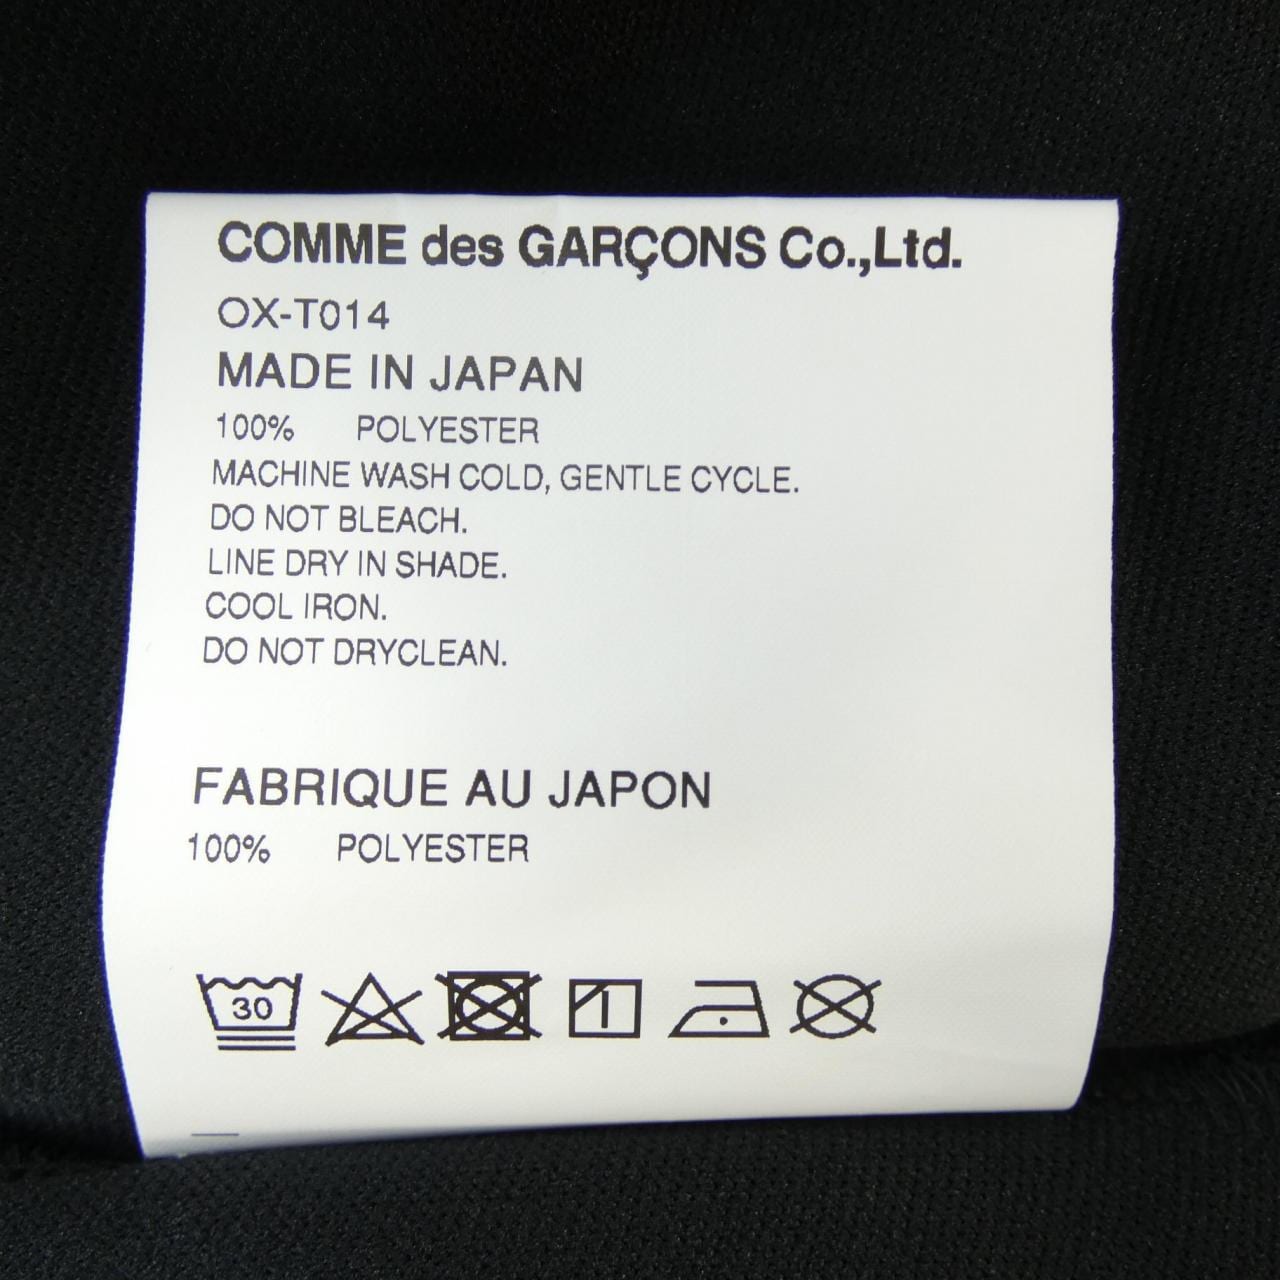 COMMME des GARCONS裤子